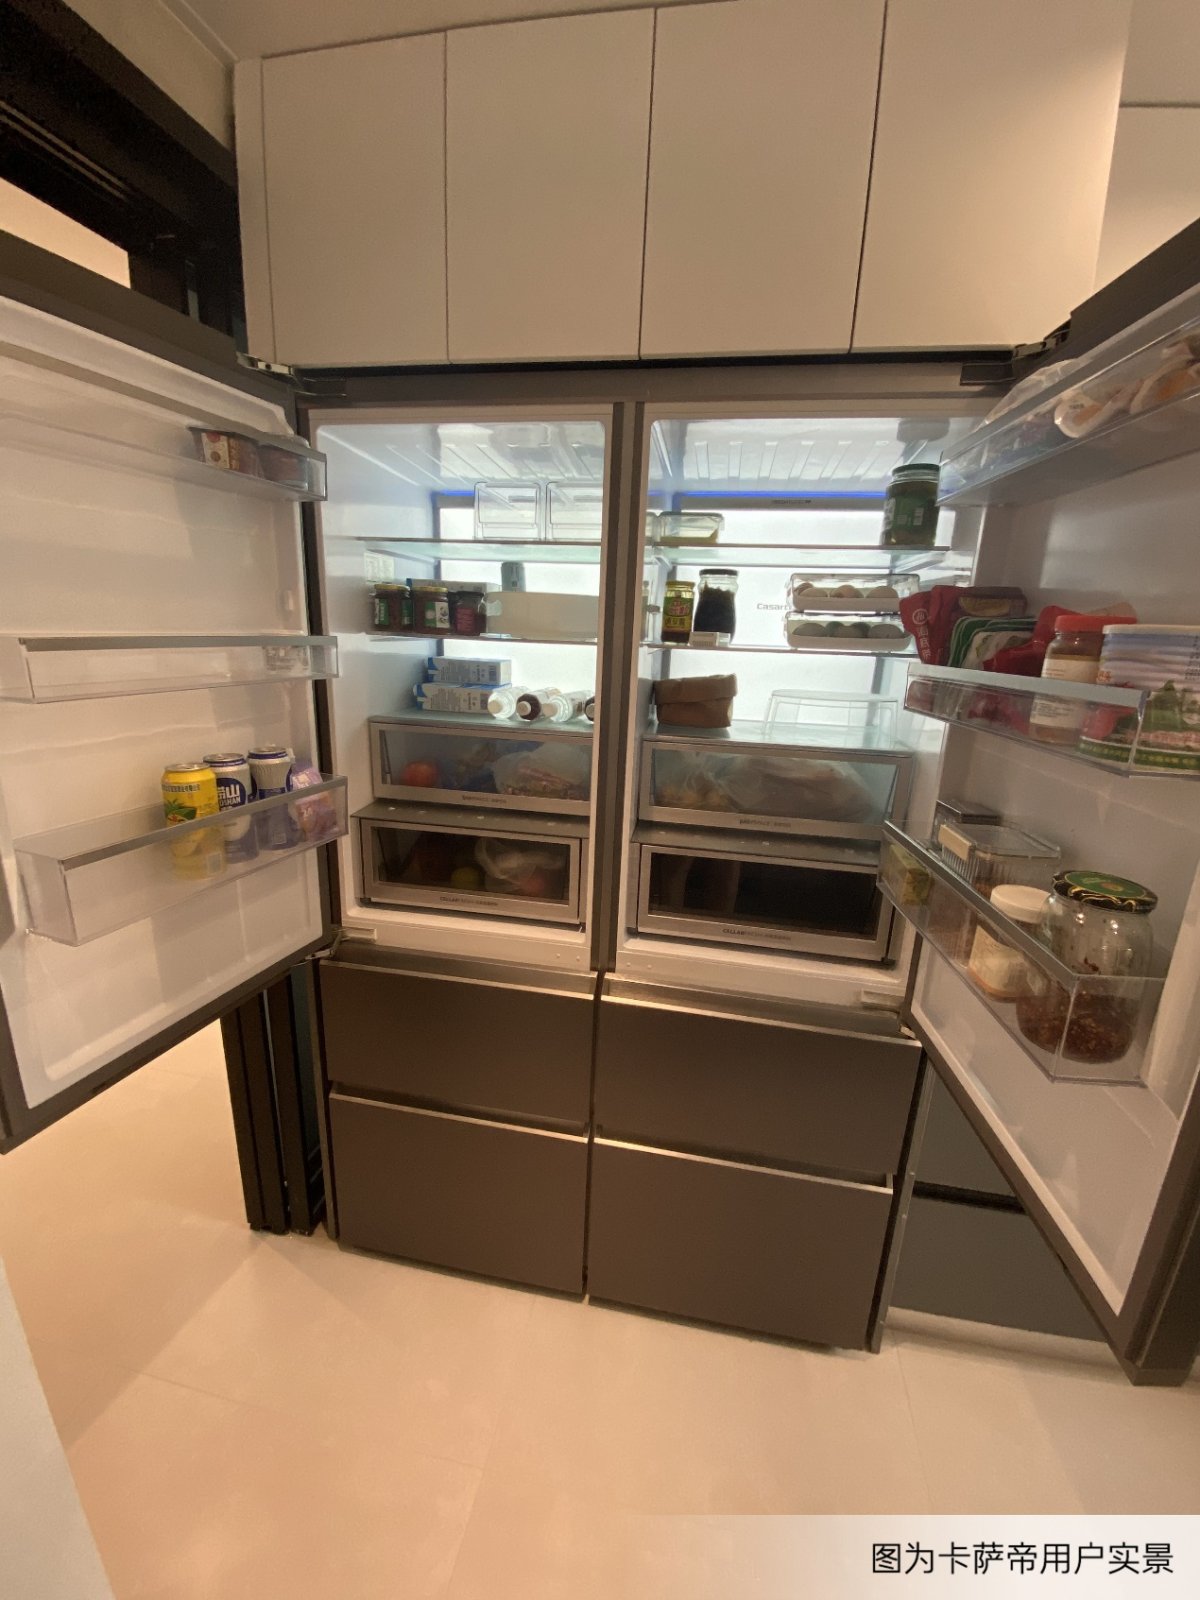 大冰箱难进小厨房？卡萨帝：小厨房能装大冰箱